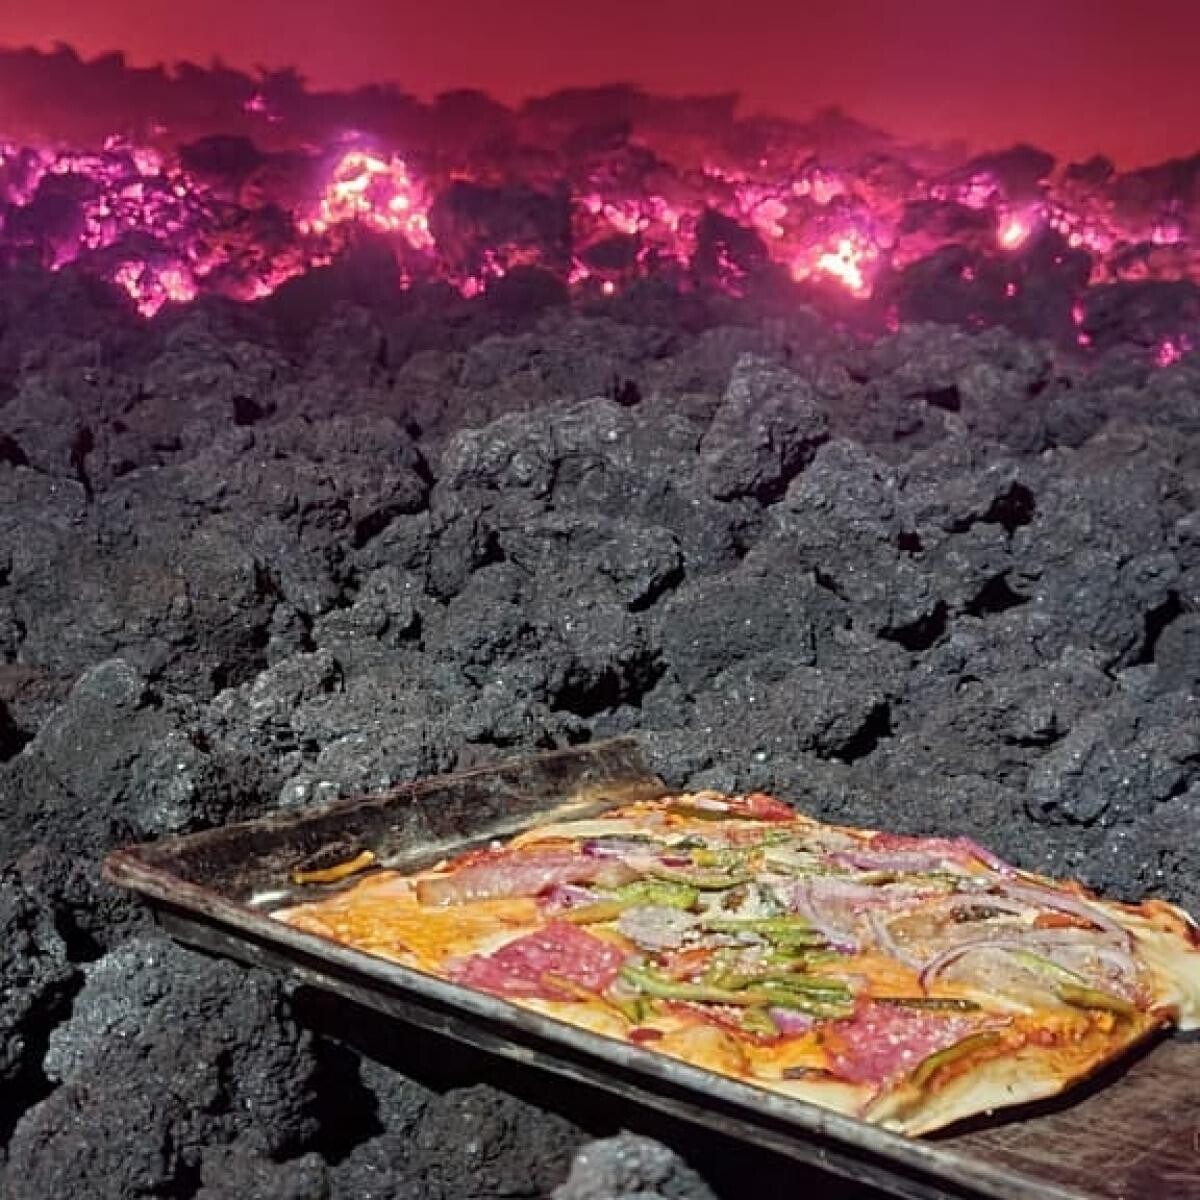 Un fost contabil prepară pizza vulcanică, pe lavă incandescentă, sursa foto Instagram